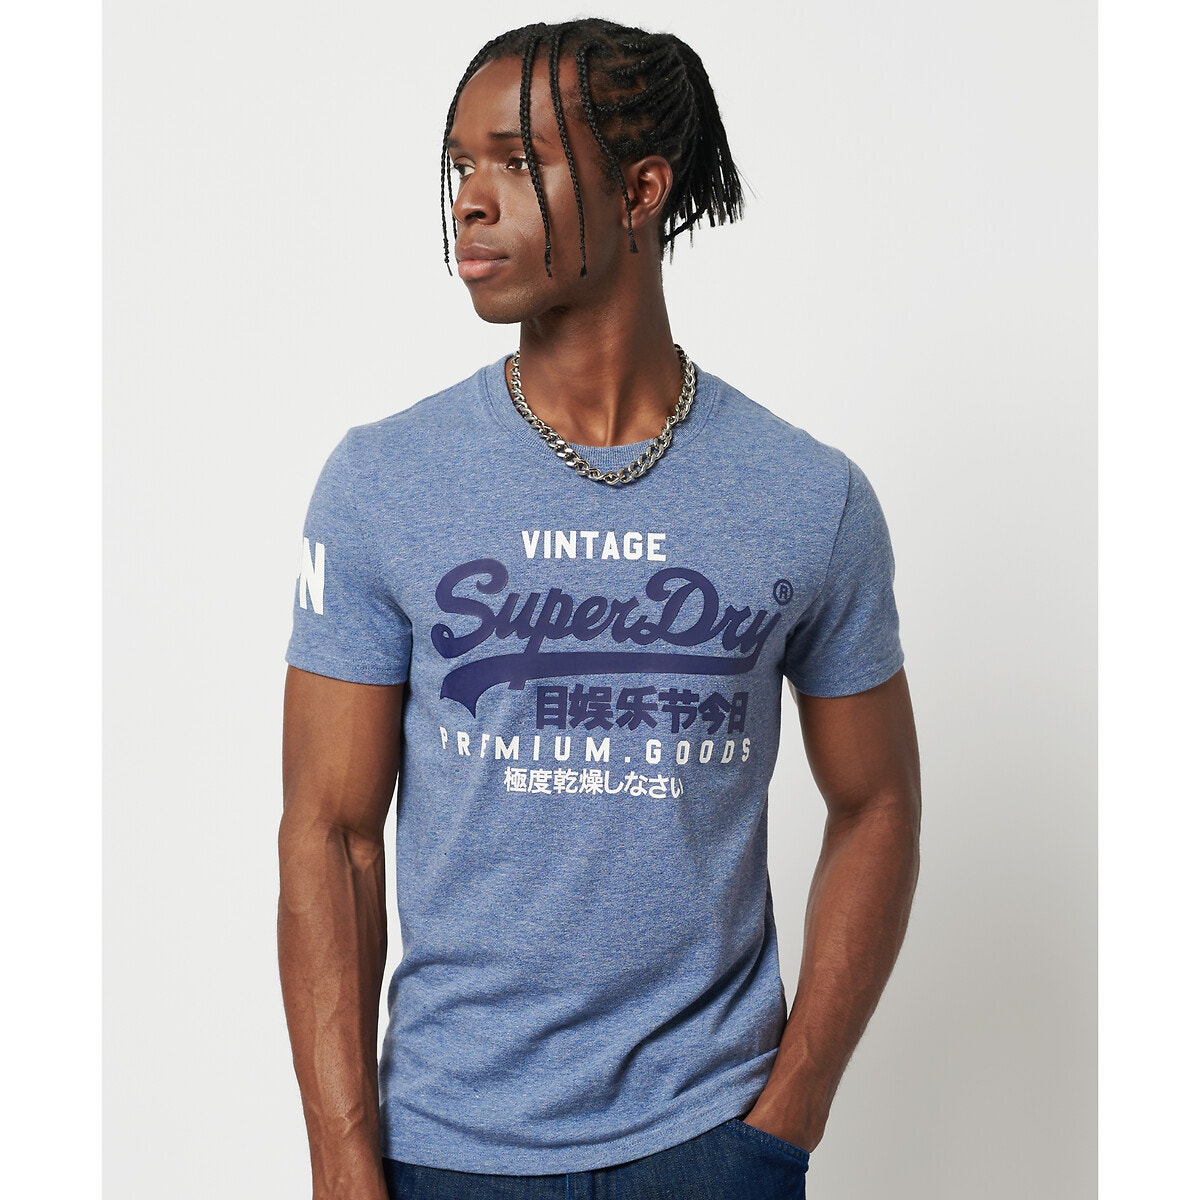 ΑΝΔΡΑΣ | Μπλούζες & Πουκάμισα | T-shirts Κοντομάνικο T-shirt, Vintage Logo